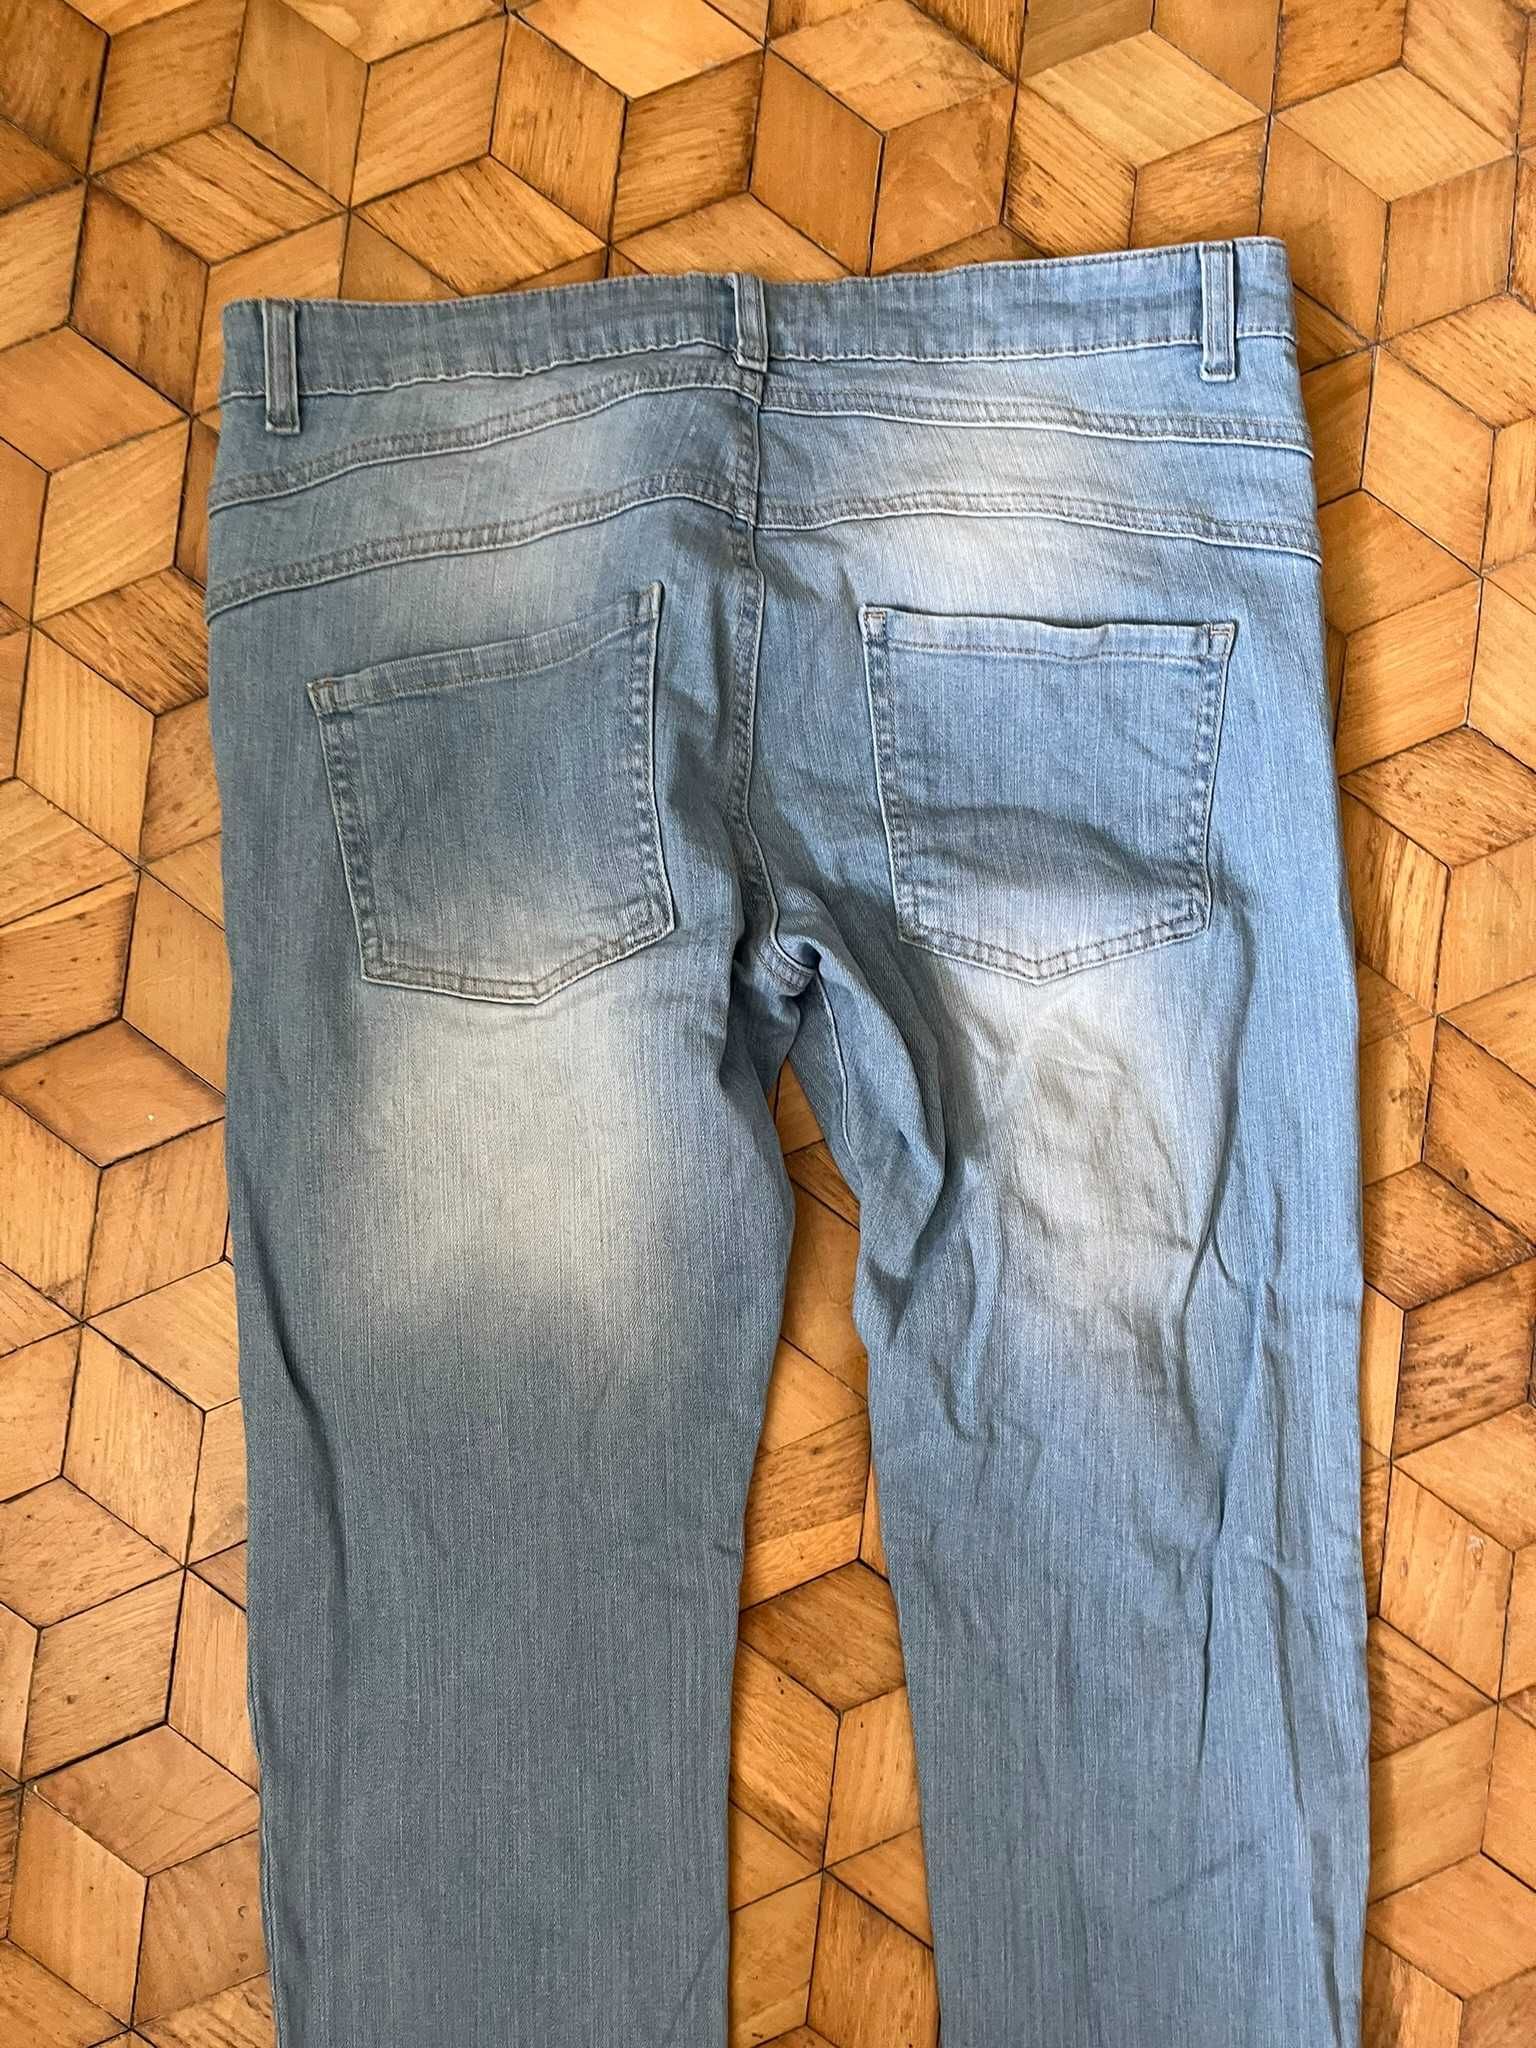 Spodnie KappAhl XL jeansowe kobiece jasne